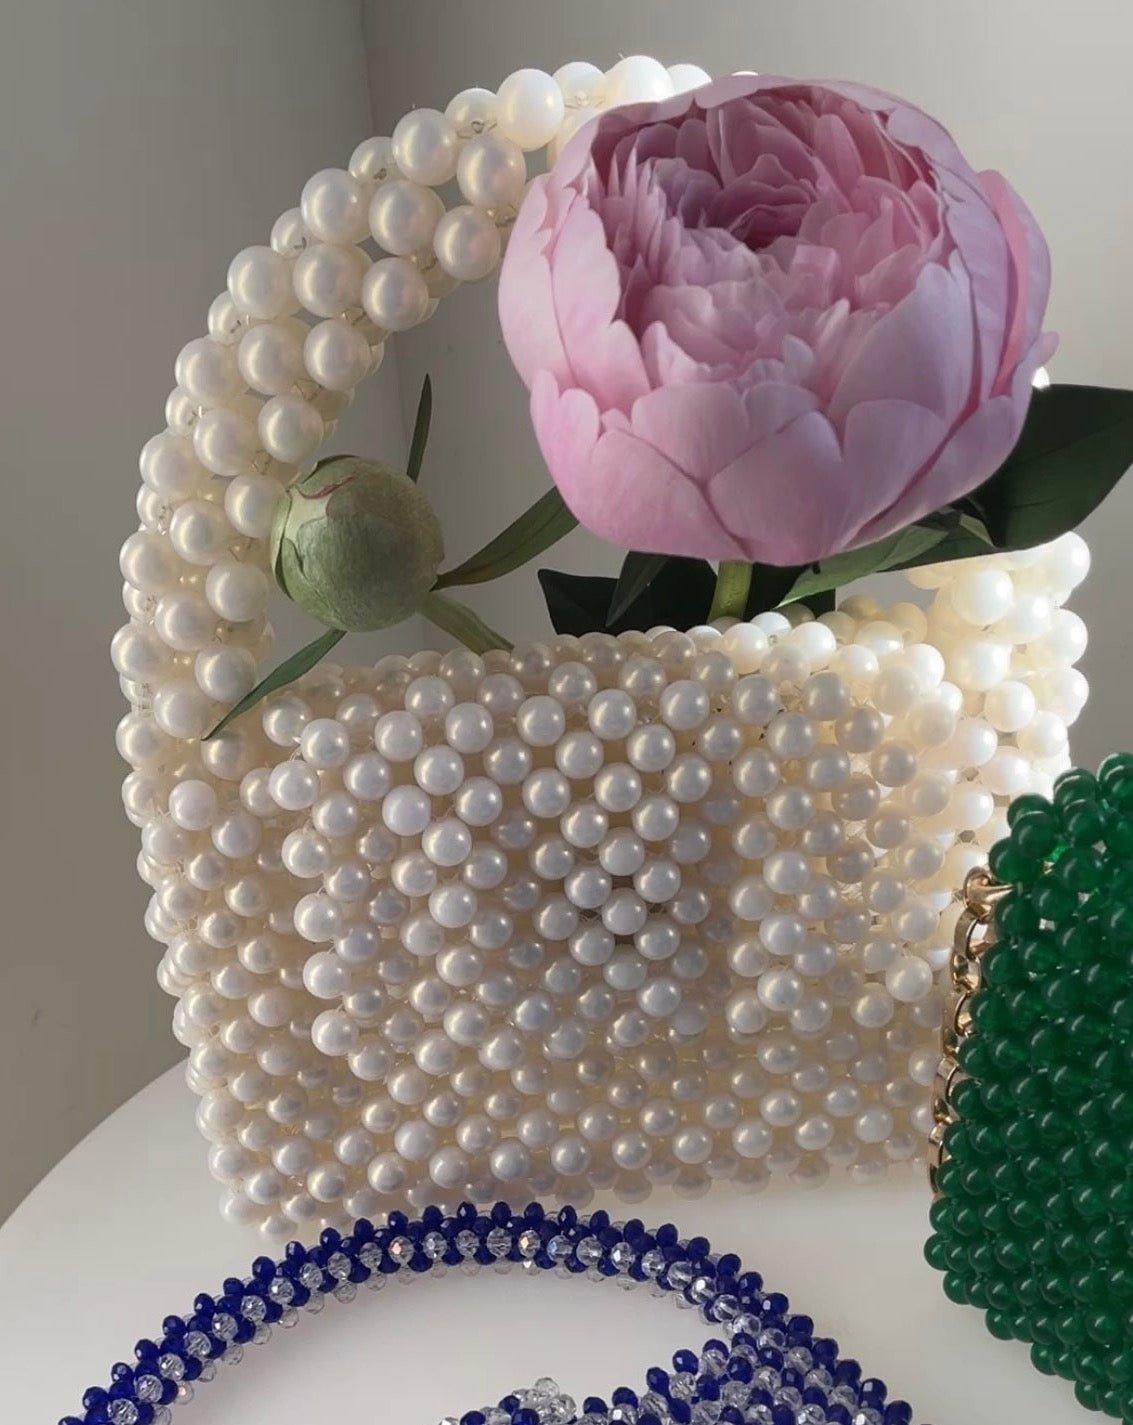 Handtasche aus Perlen cremefarben - GRAYSS FASHION